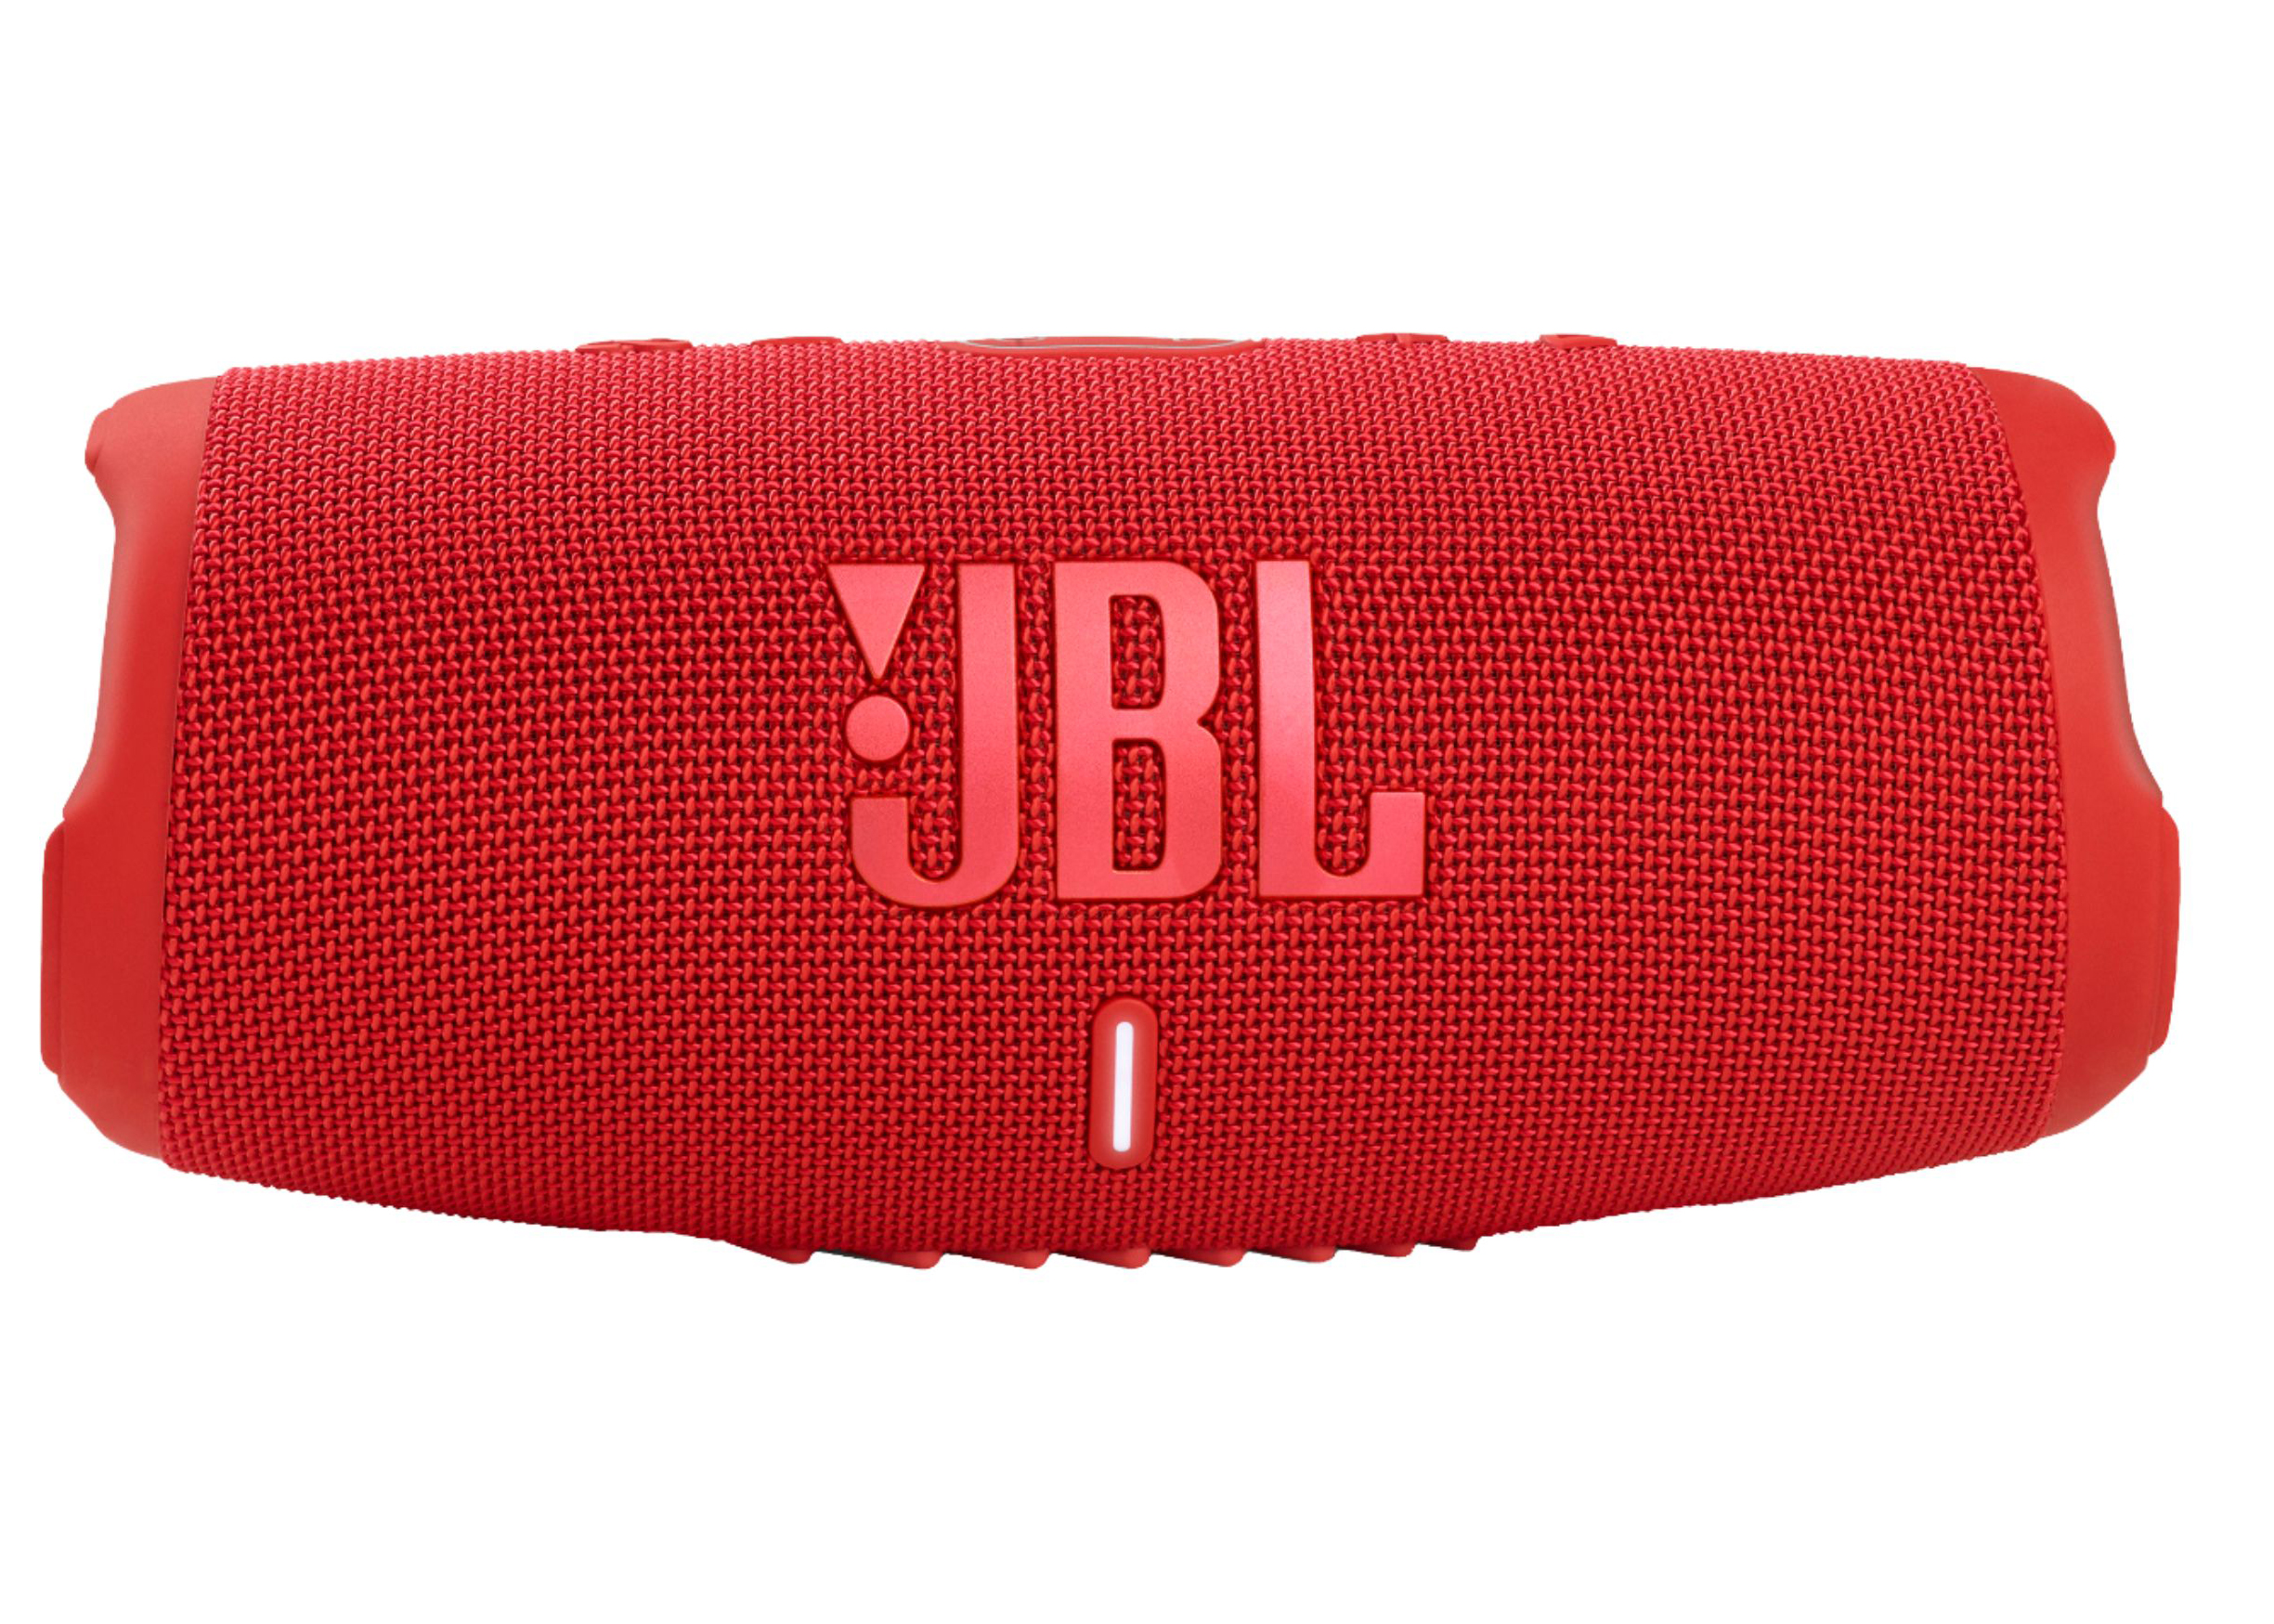 6,975円JBL CHARGE 5 RED